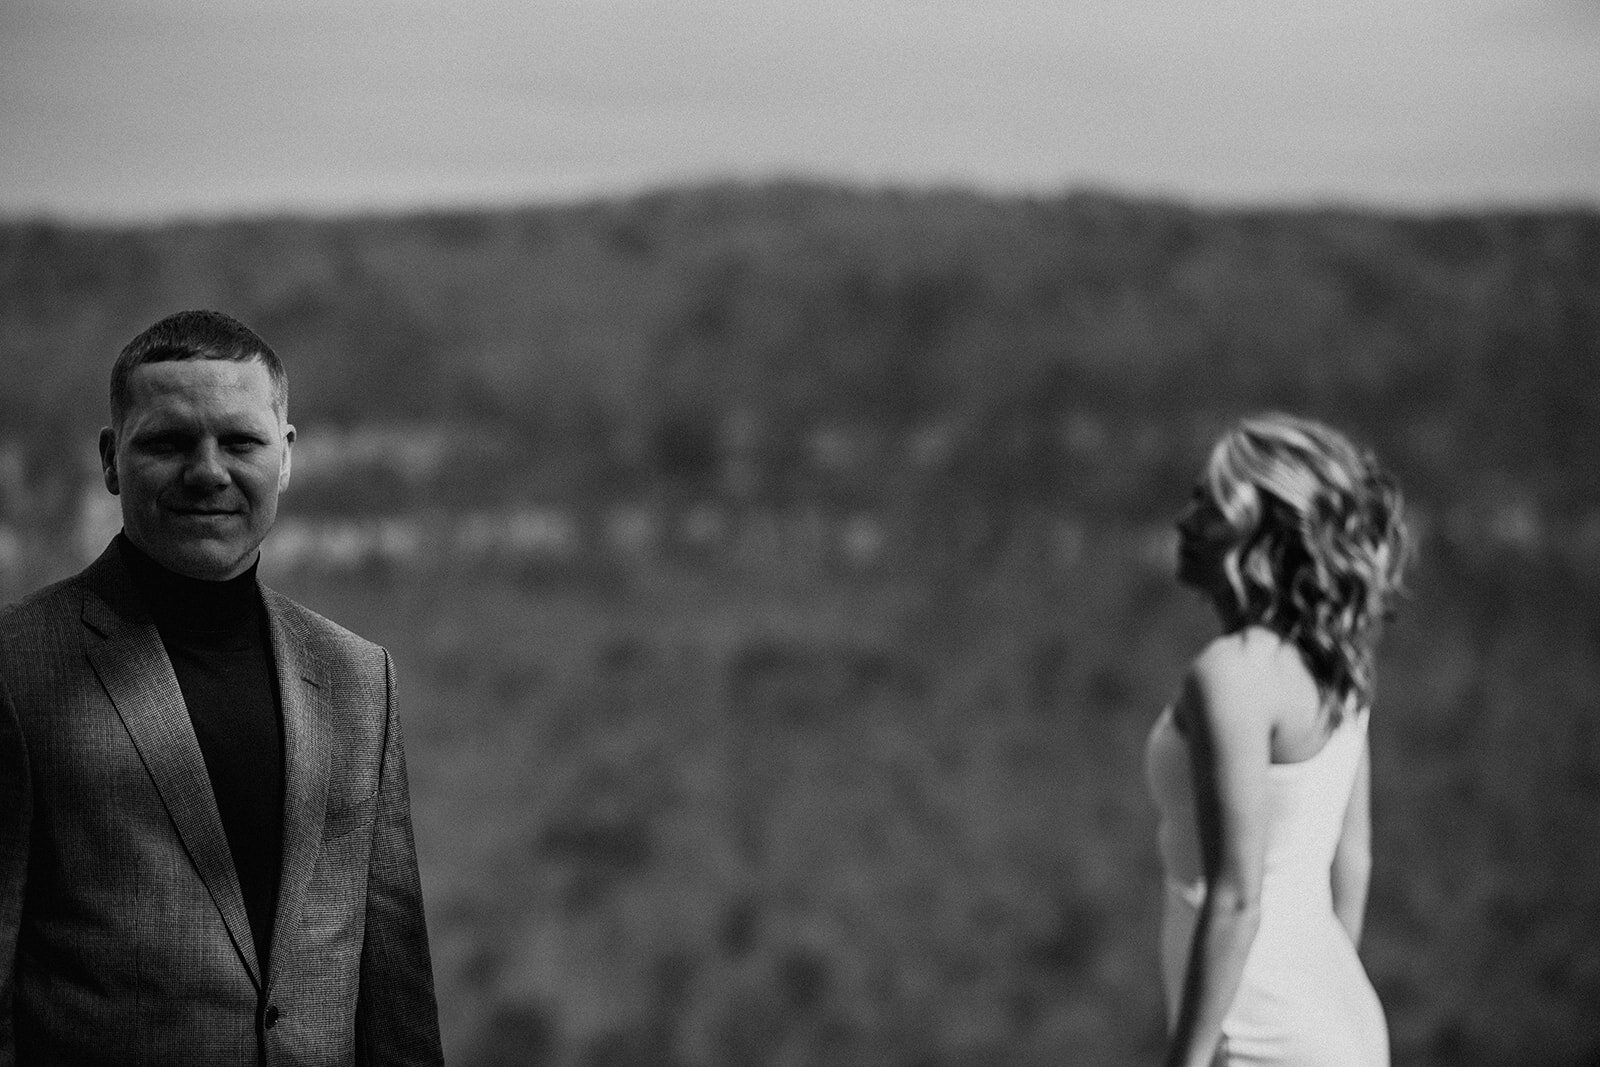 snoopers-rock-adventure-elopement-chattanooga-wedding-photographerfoster-falls-elopement-chattanooga-wedding-photographer-538_websize.jpg